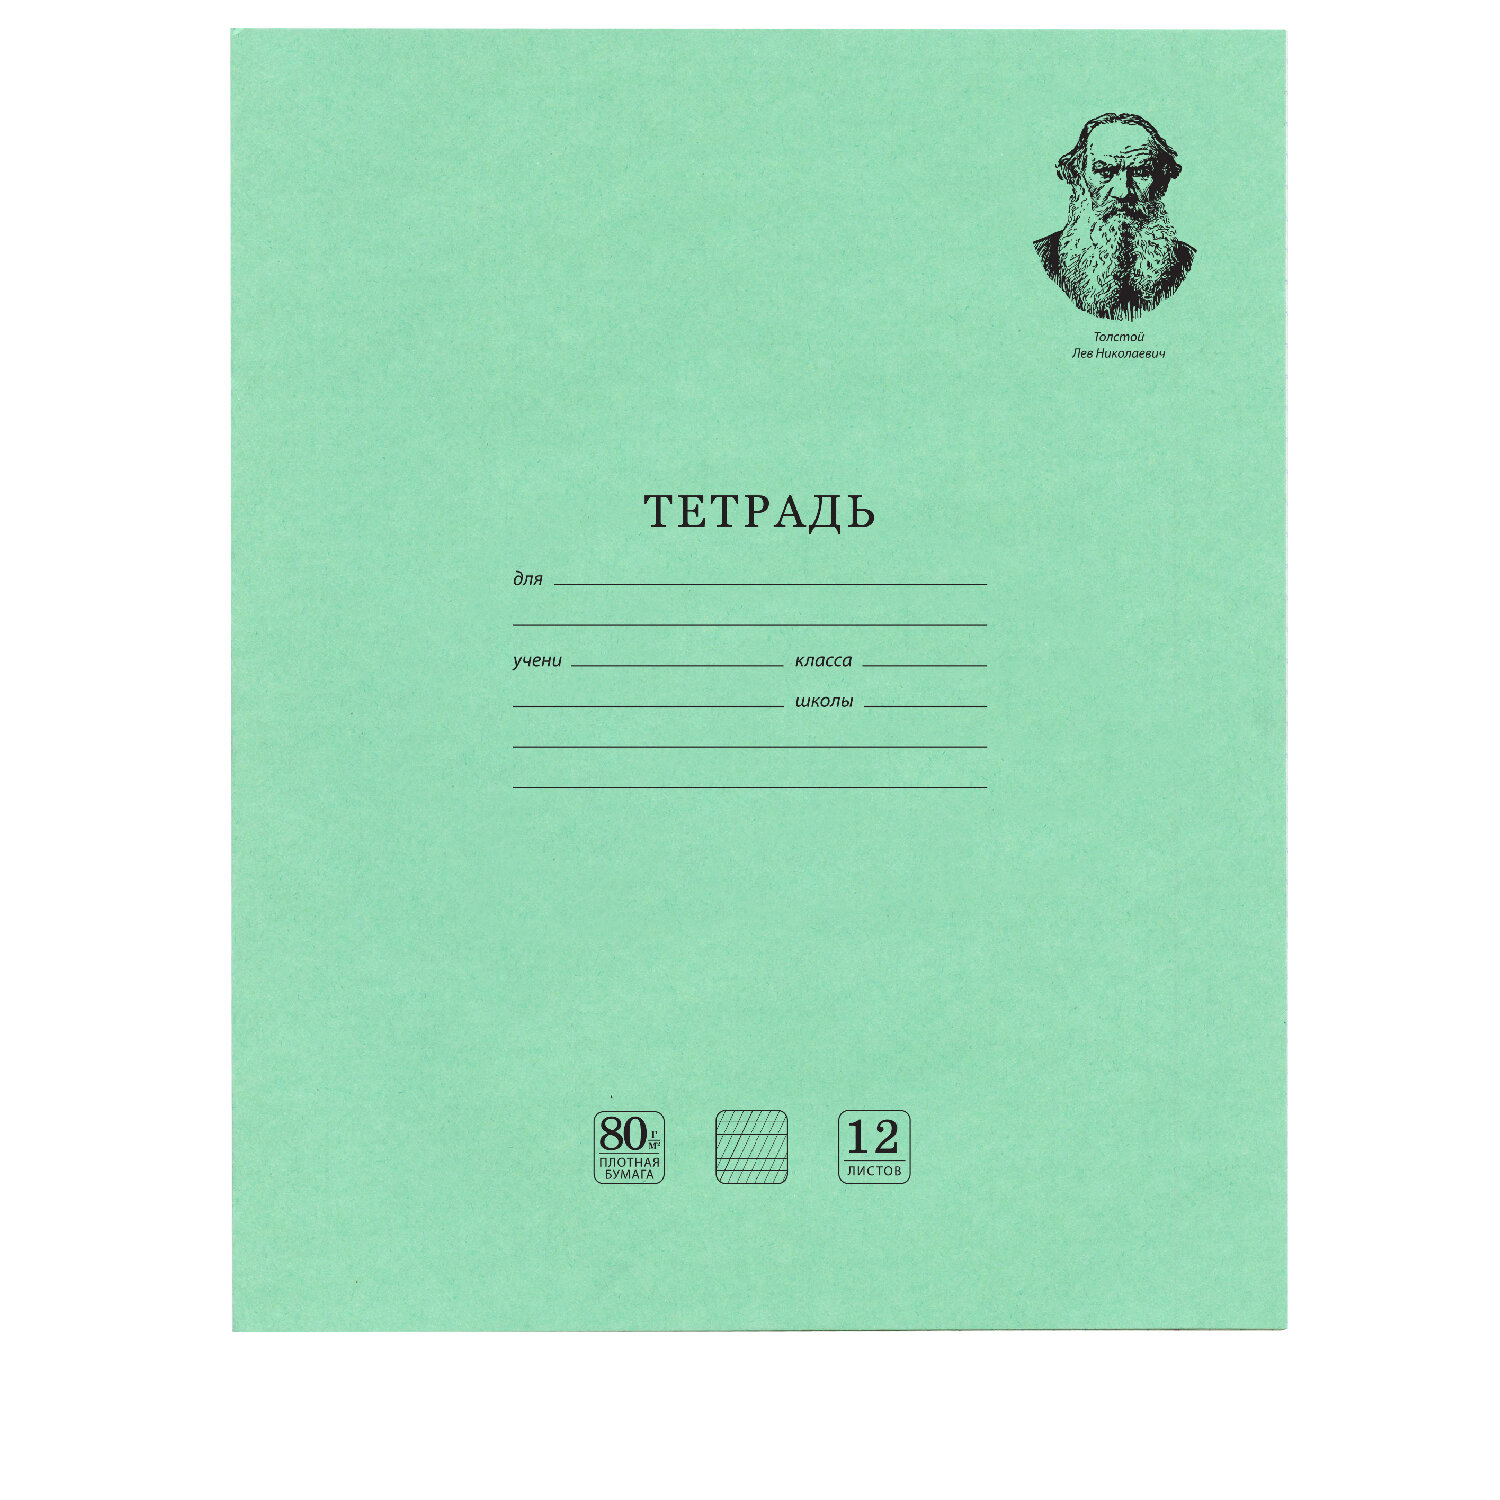 Тетрадь Brauberg Великие имена Толстой Л.Н. 880021, 12 листов частая косая линия, 20 штук